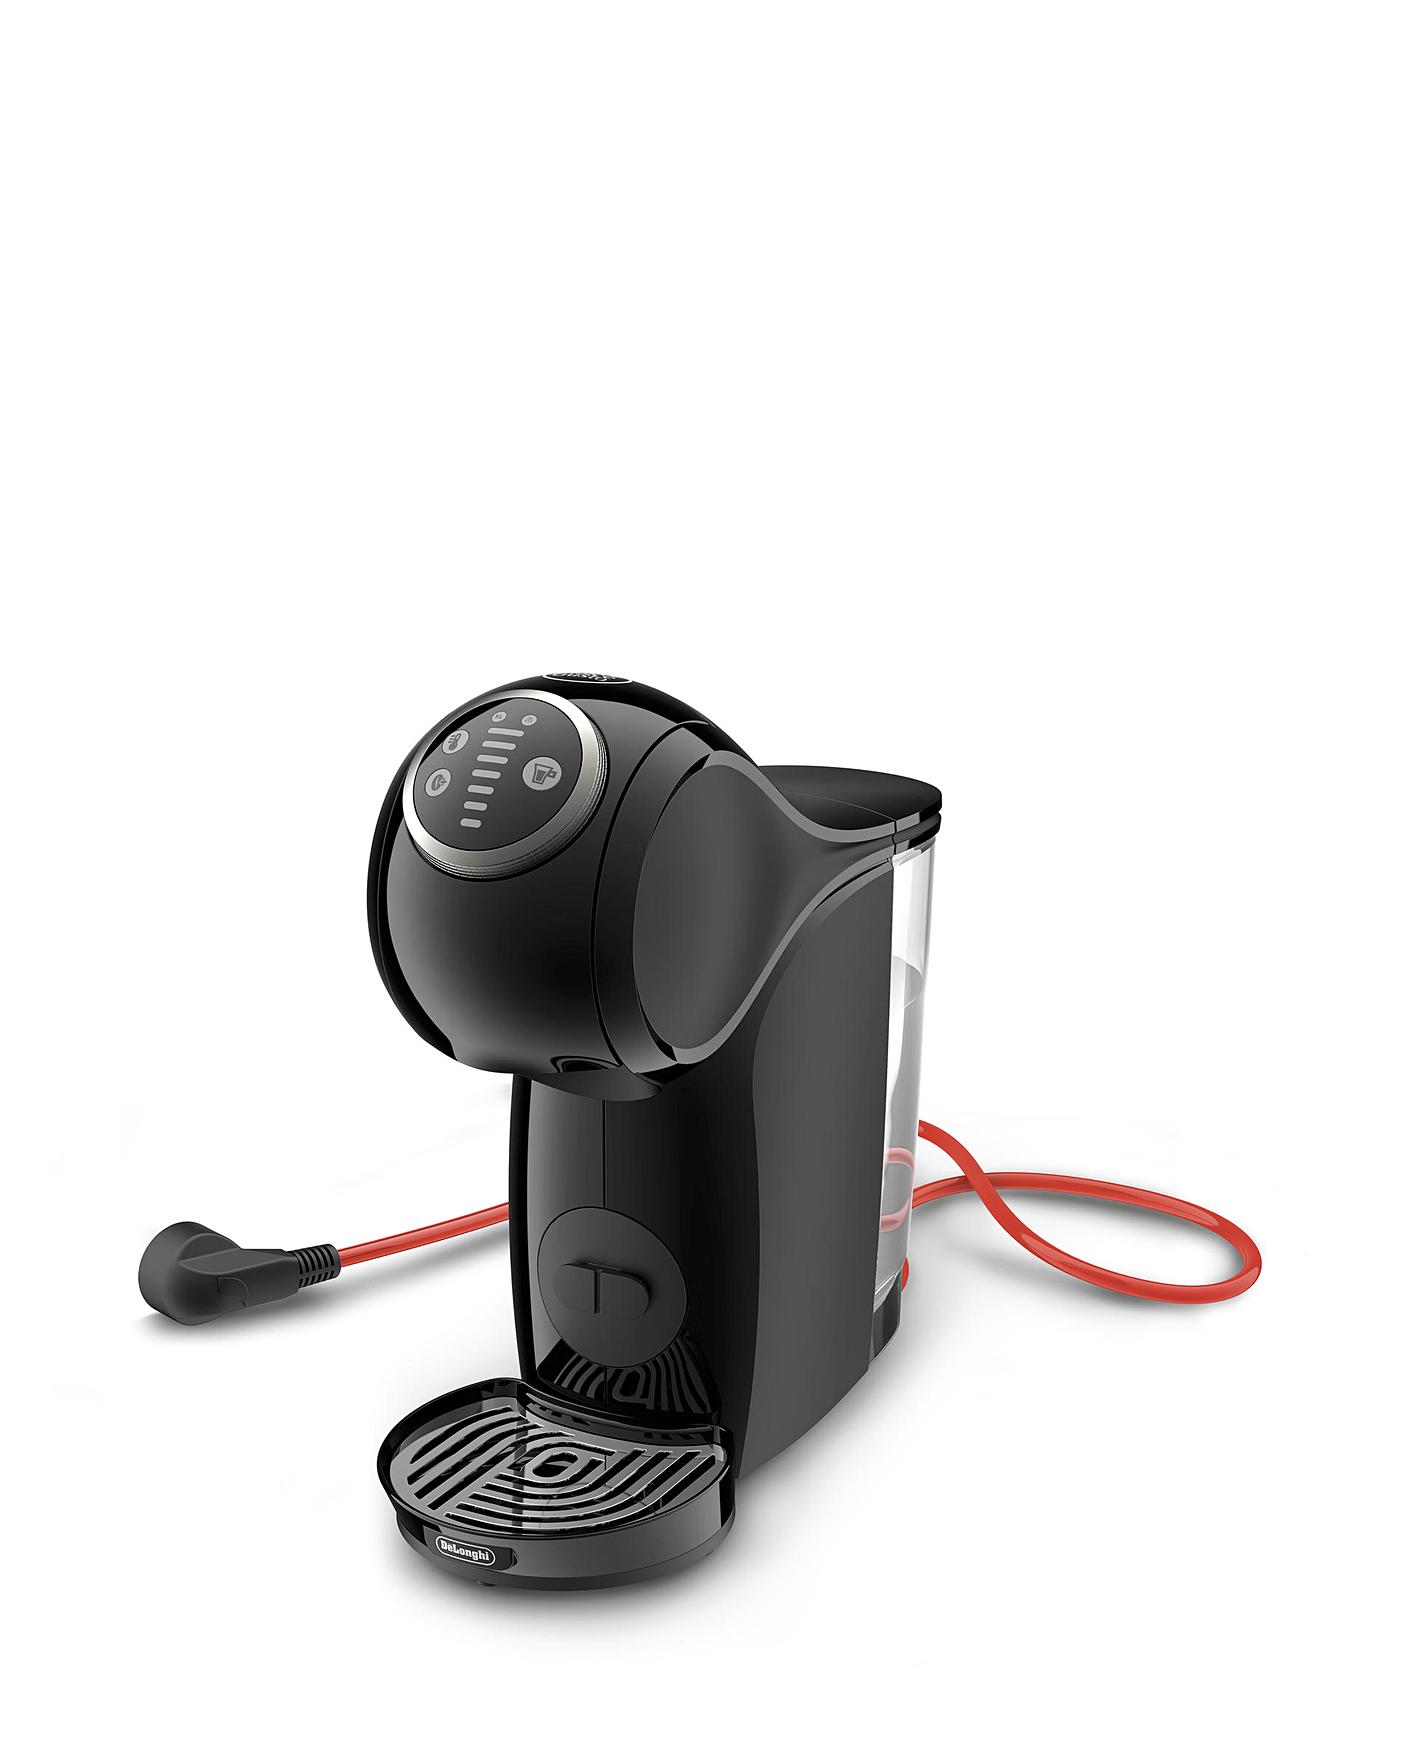 Nescafe Dolce Gusto Genio S Plus Coffee Machine